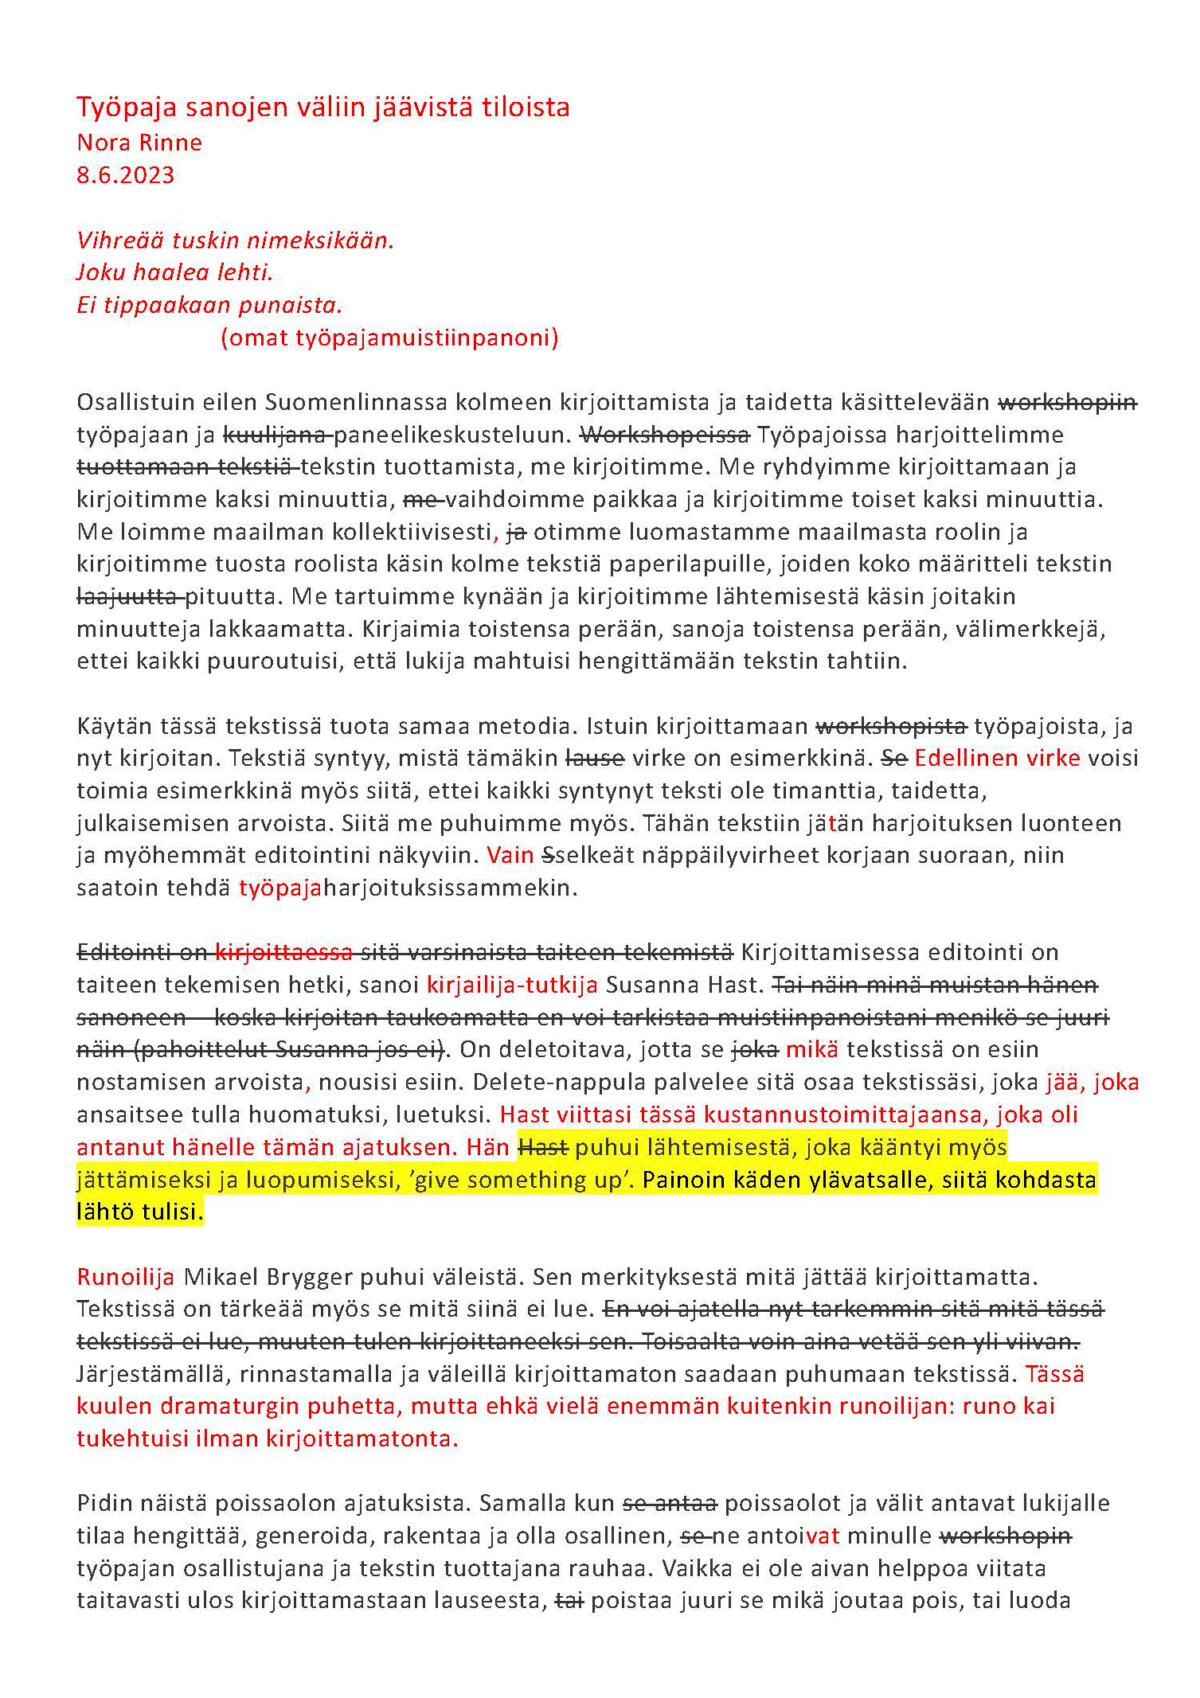 Nora Rinteen teksti, joka sisältää punaisella tekstillä ja keltaisella korostuksella tehtyjä merkintöjä sekä tekstin yliviivauksia. Kuva 1/2. Selkokielinen versio blogin lopussa.